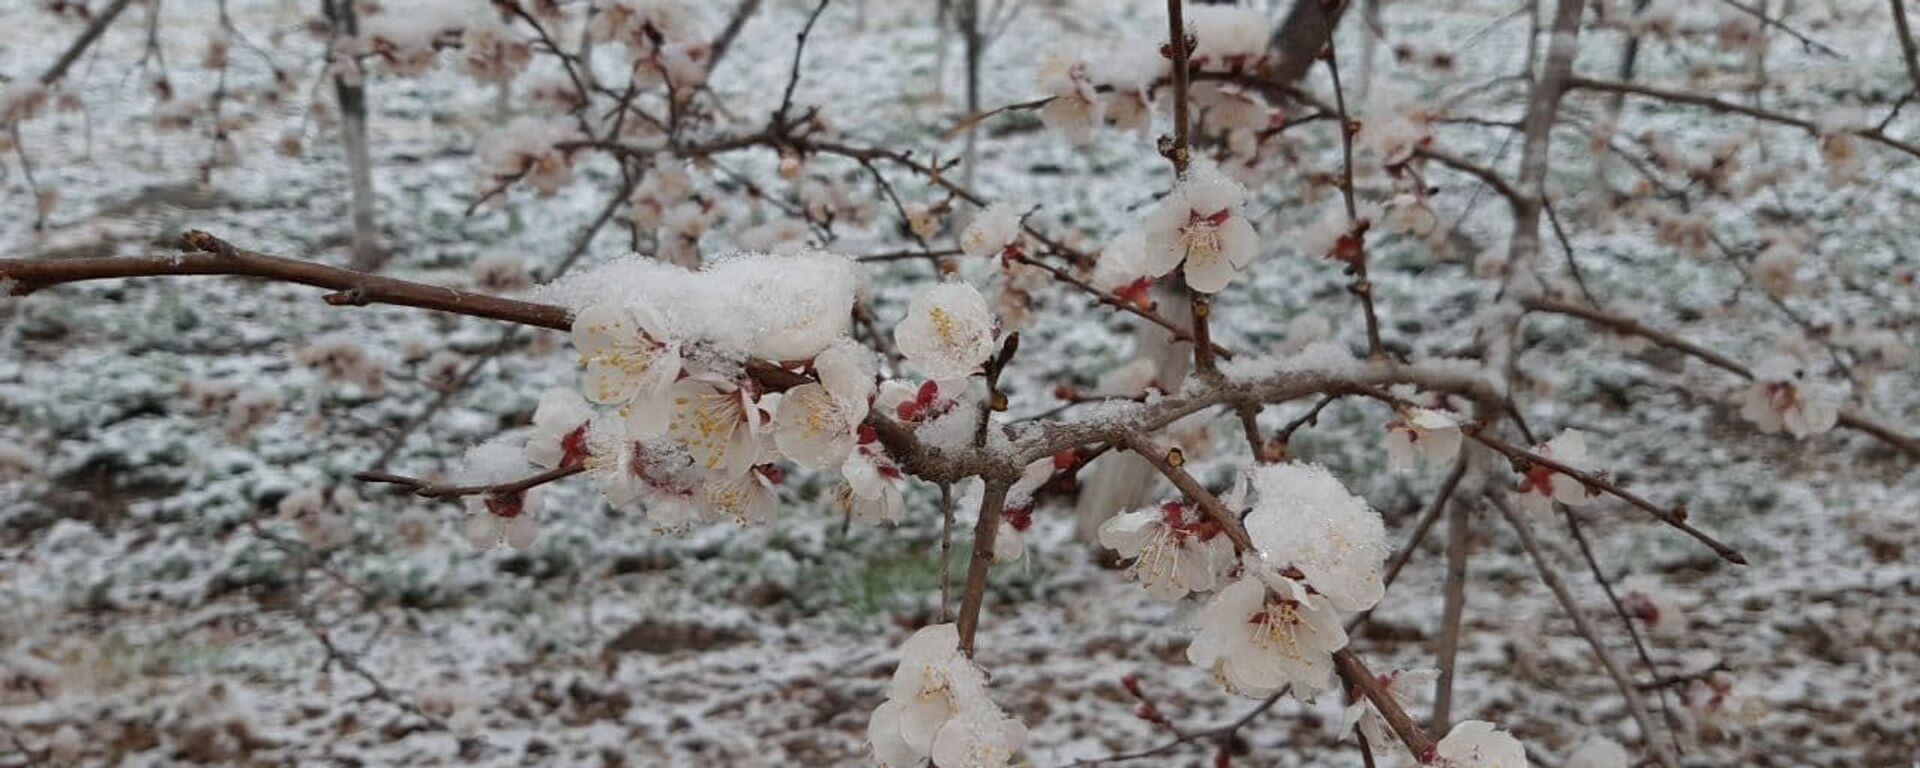 Расцветший абрикос под снегом - Sputnik Узбекистан, 1920, 24.02.2021